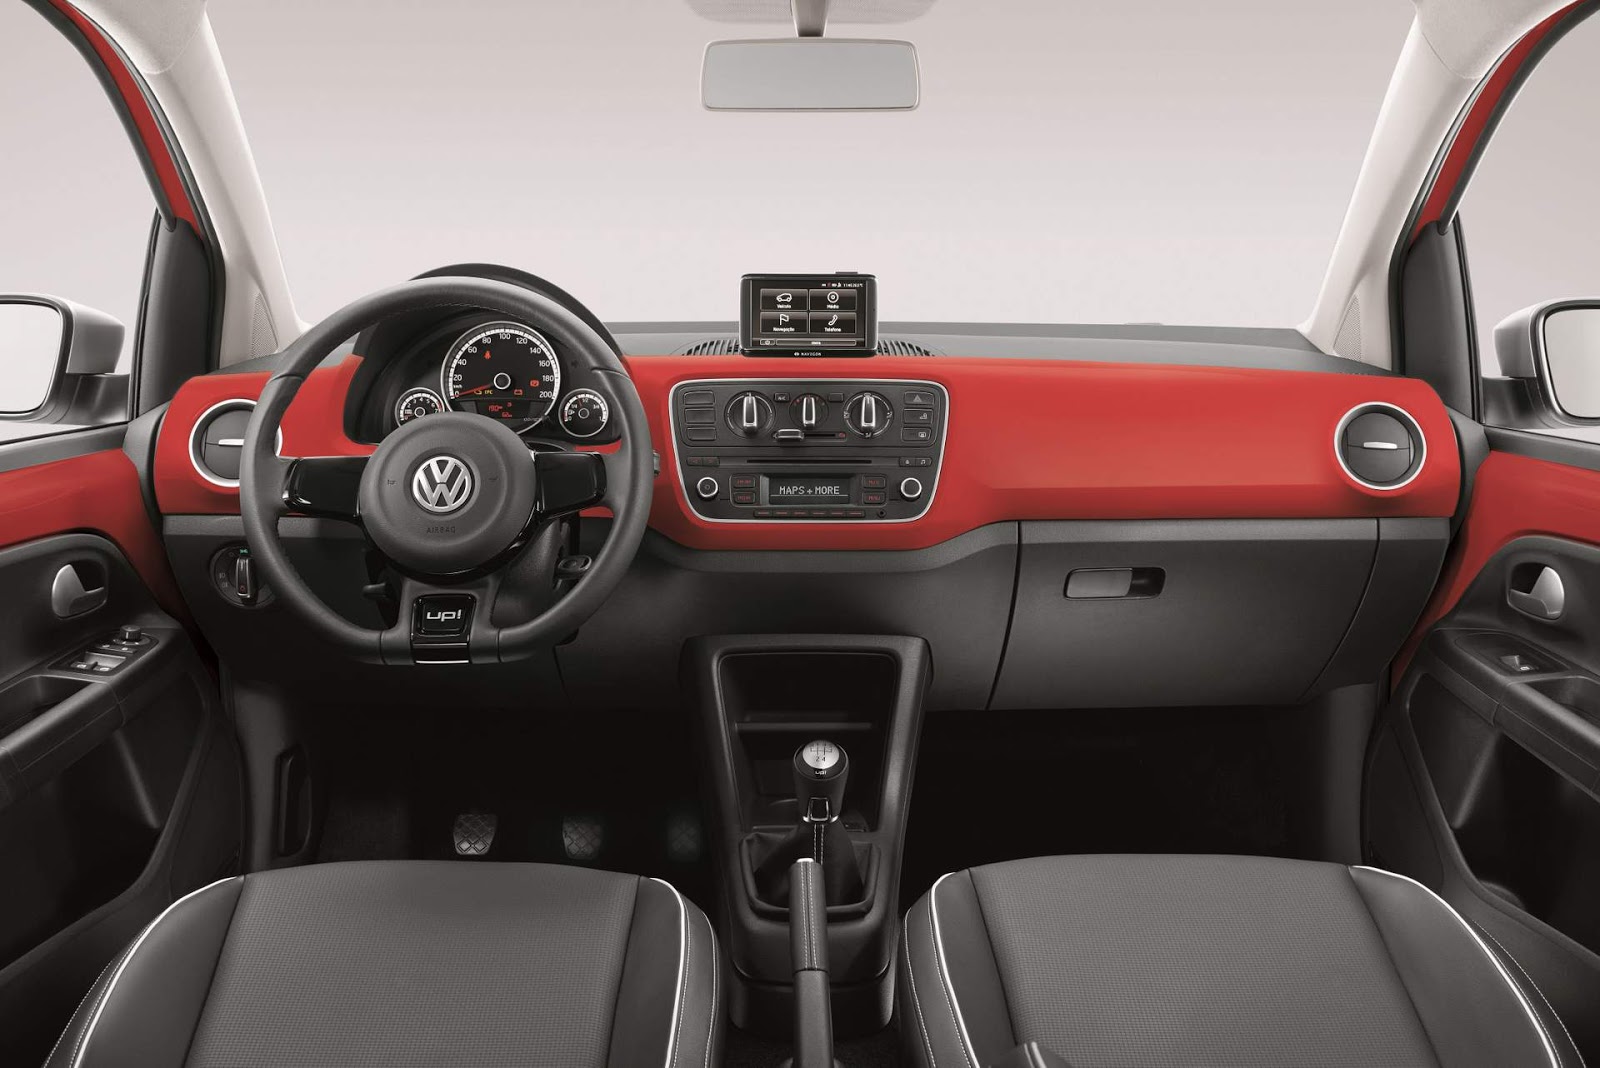 Volkswagen convoca recall de veículos. Confira se seu modelo está incluído